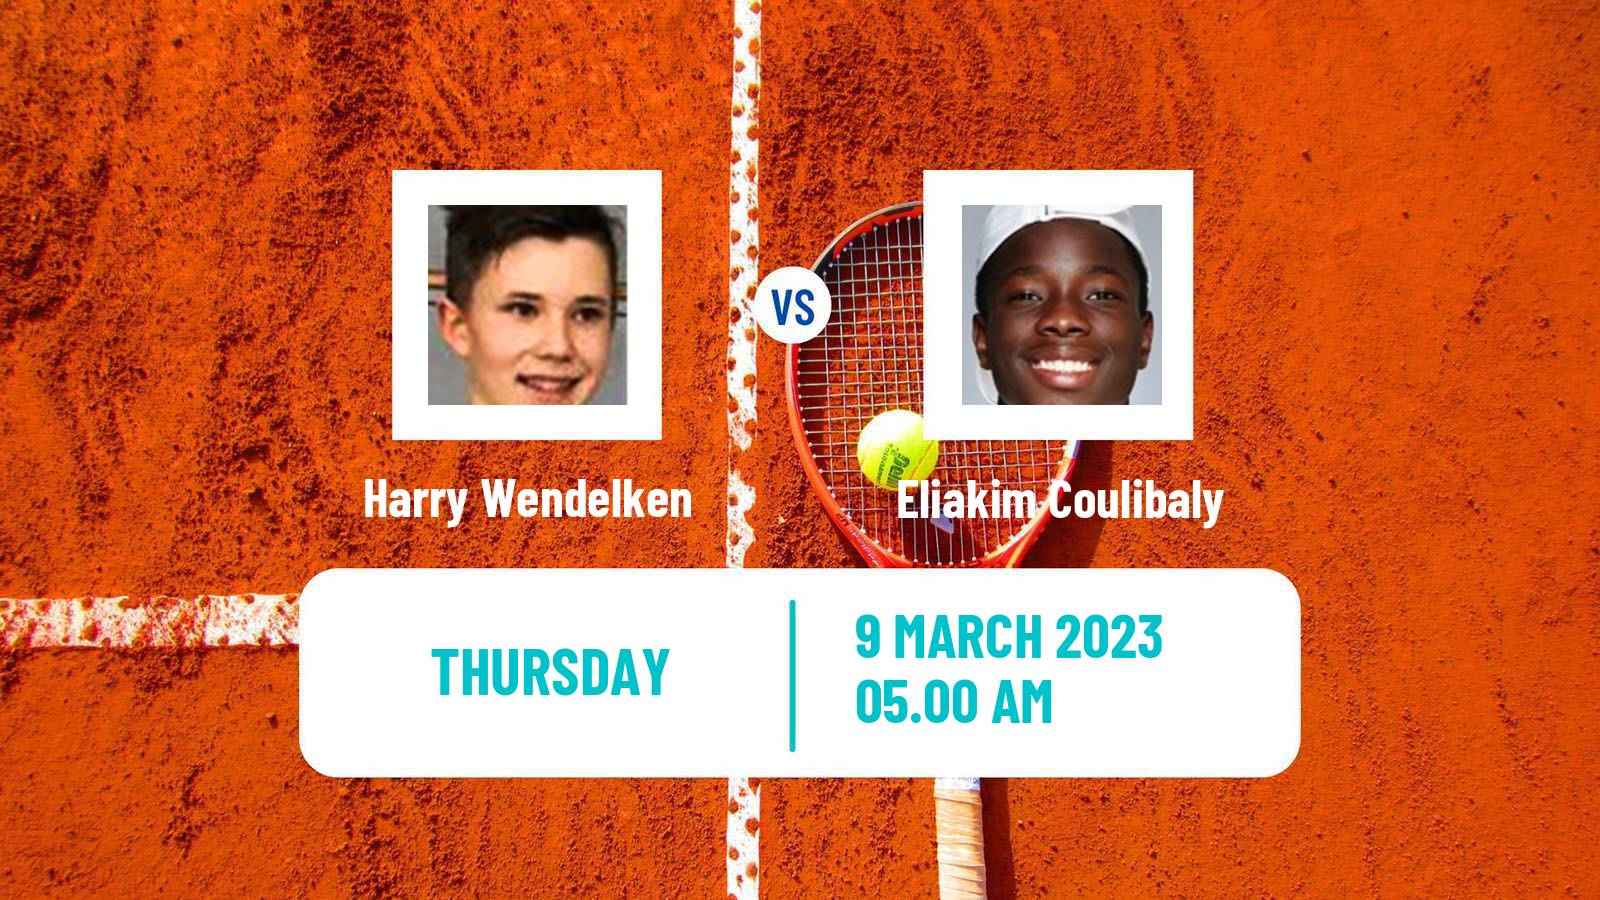 Tennis ITF Tournaments Harry Wendelken - Eliakim Coulibaly